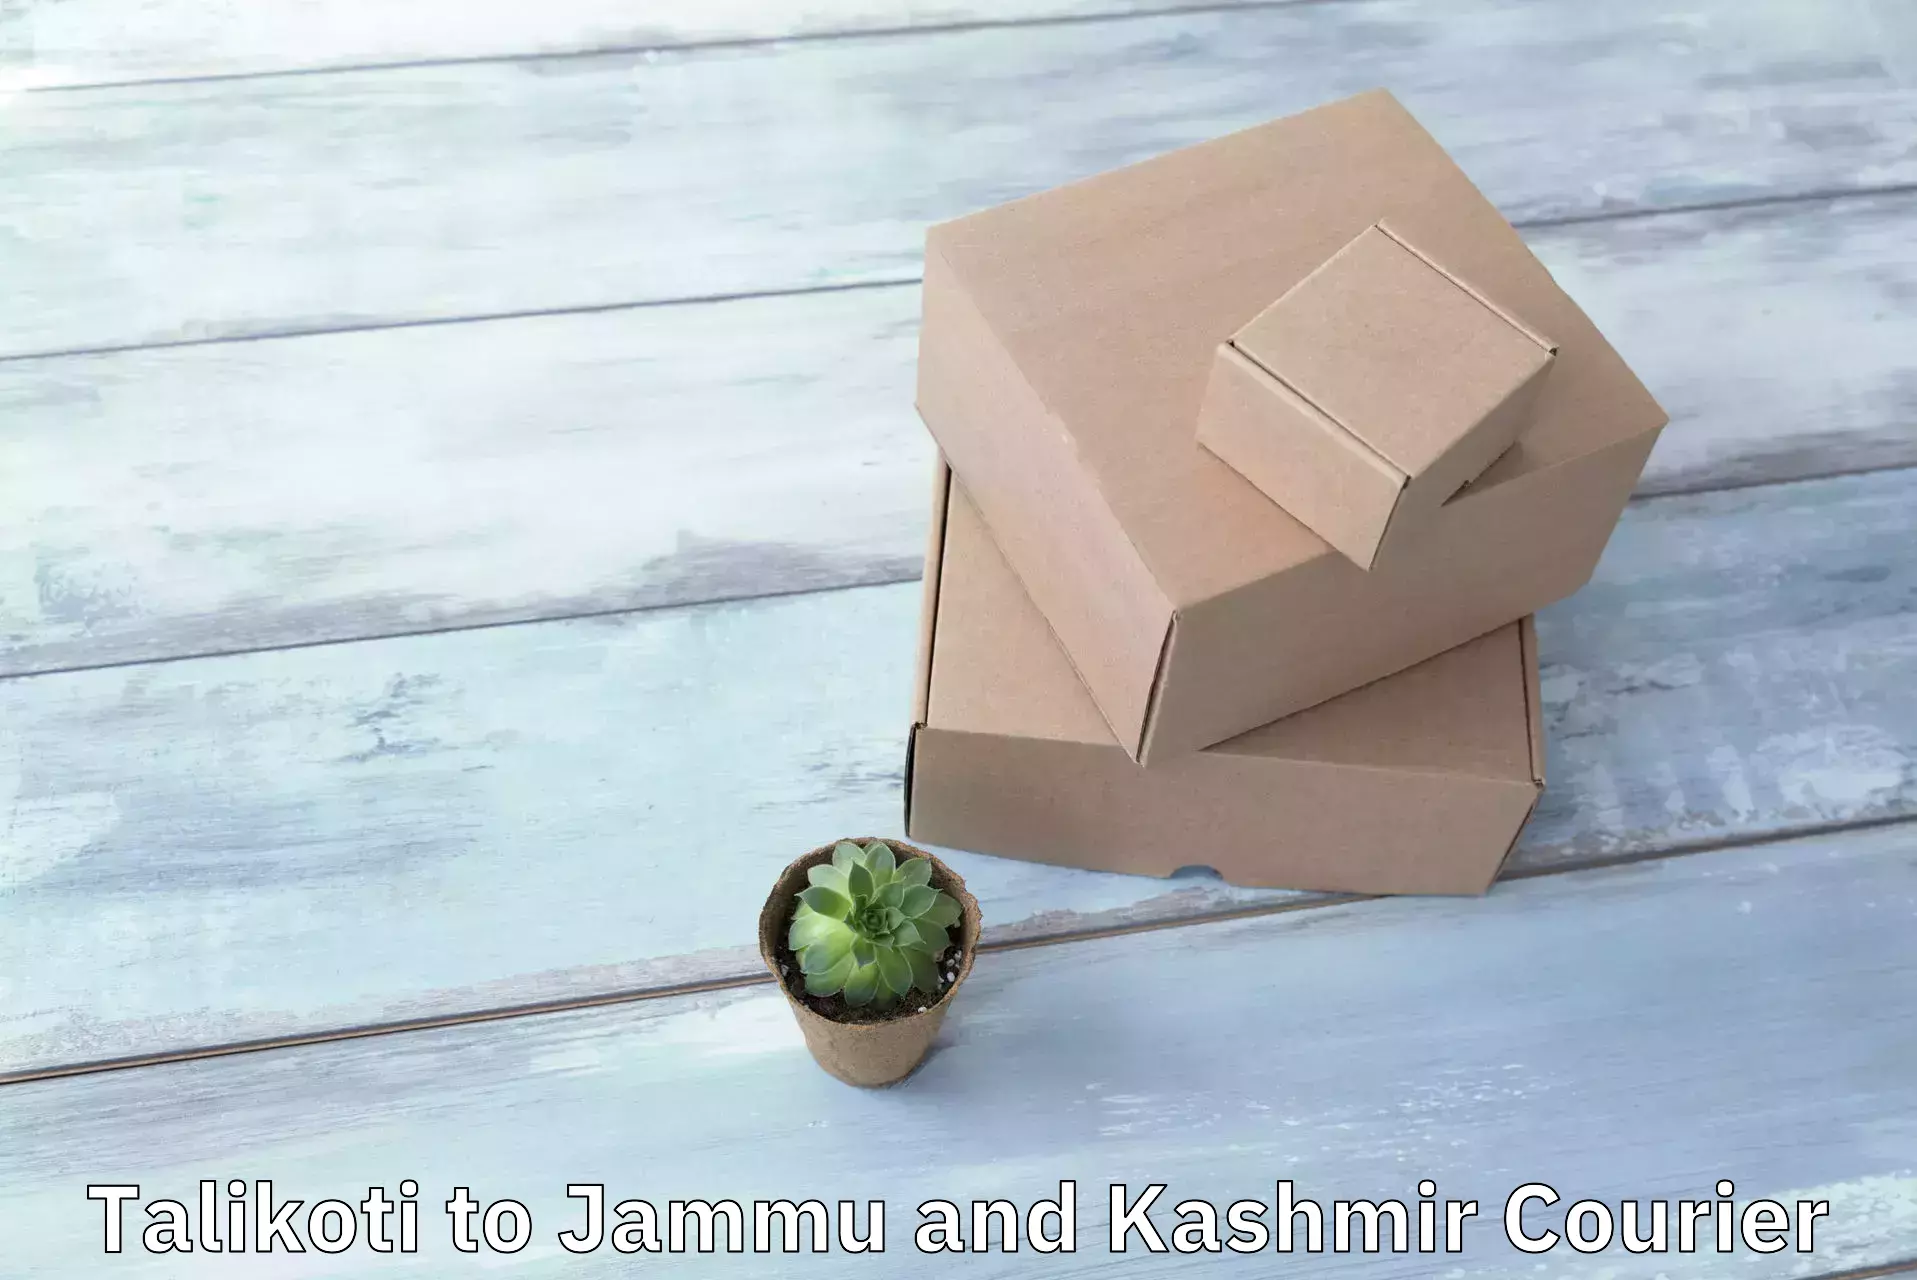 24/7 courier service Talikoti to Jammu and Kashmir